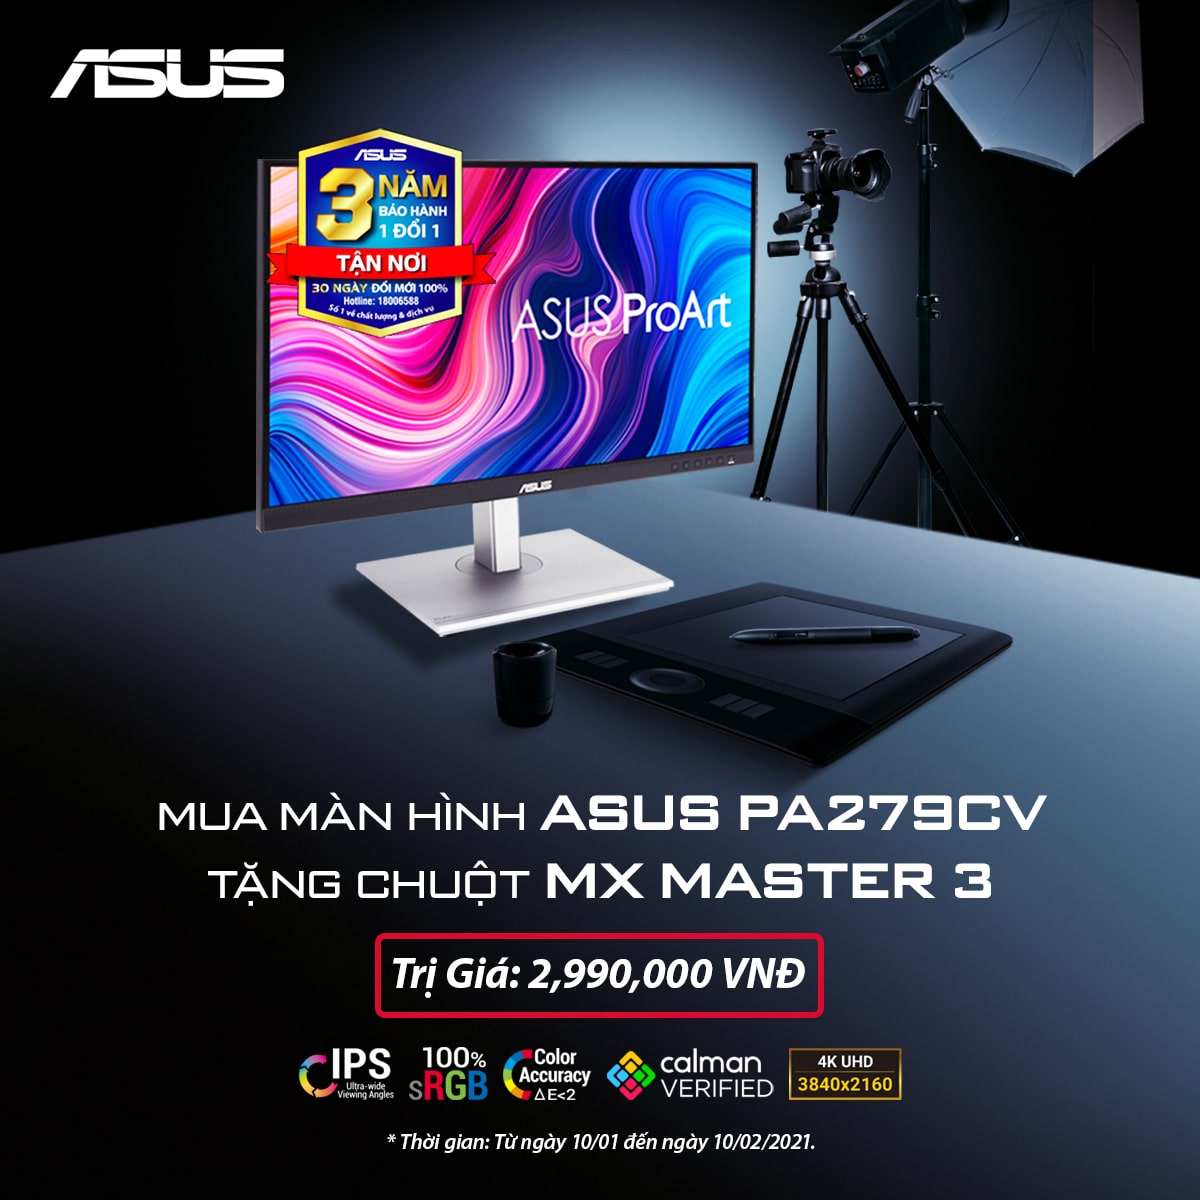 Mua màn hình ASUS PA279CV nhận ngay chuột MX Master 3